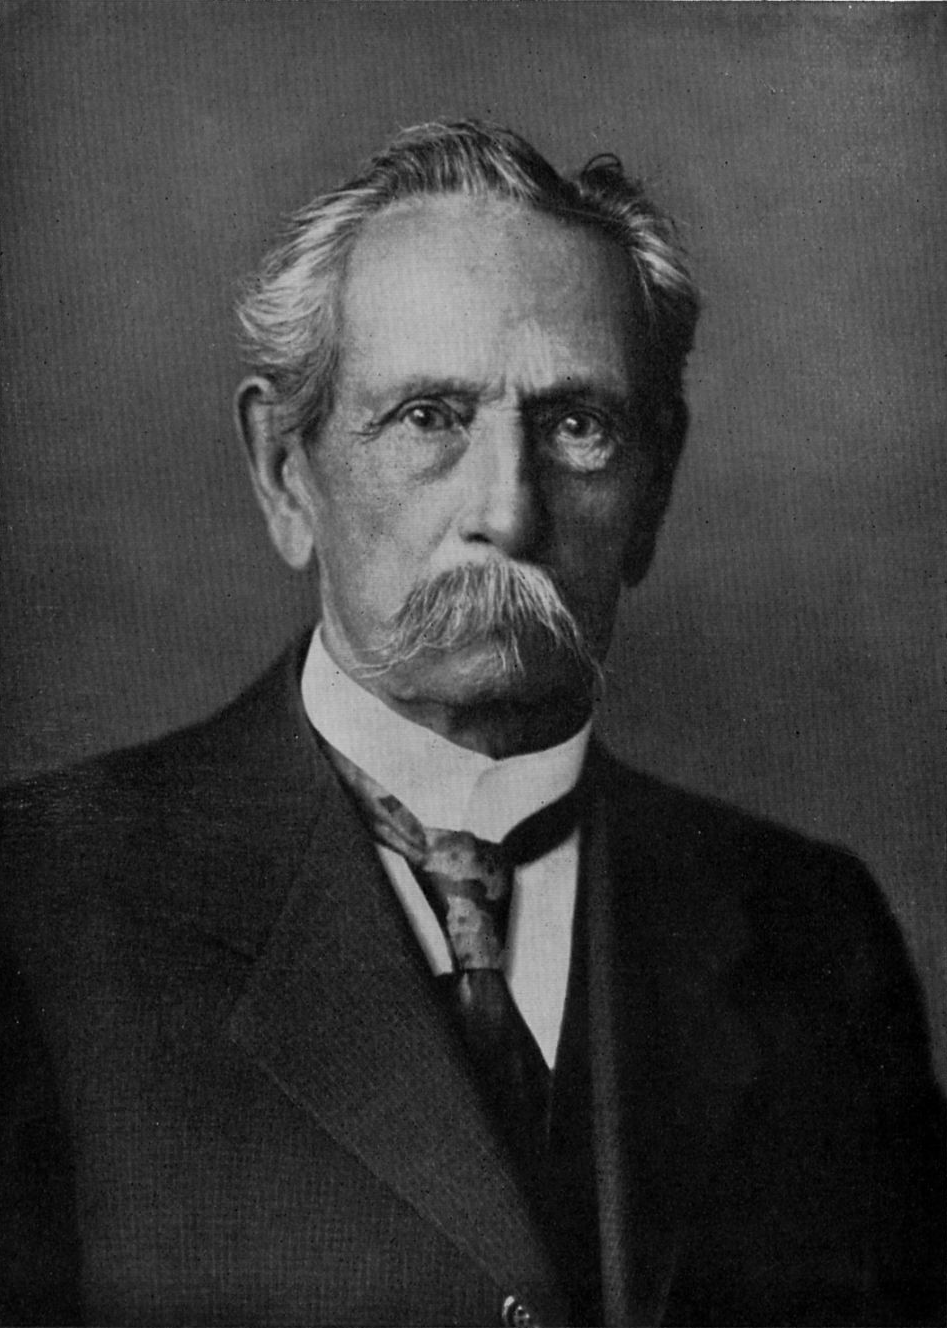 Foto von Carl Benz aus seiner "Lebensfahrt eines deutschen Erfinders"